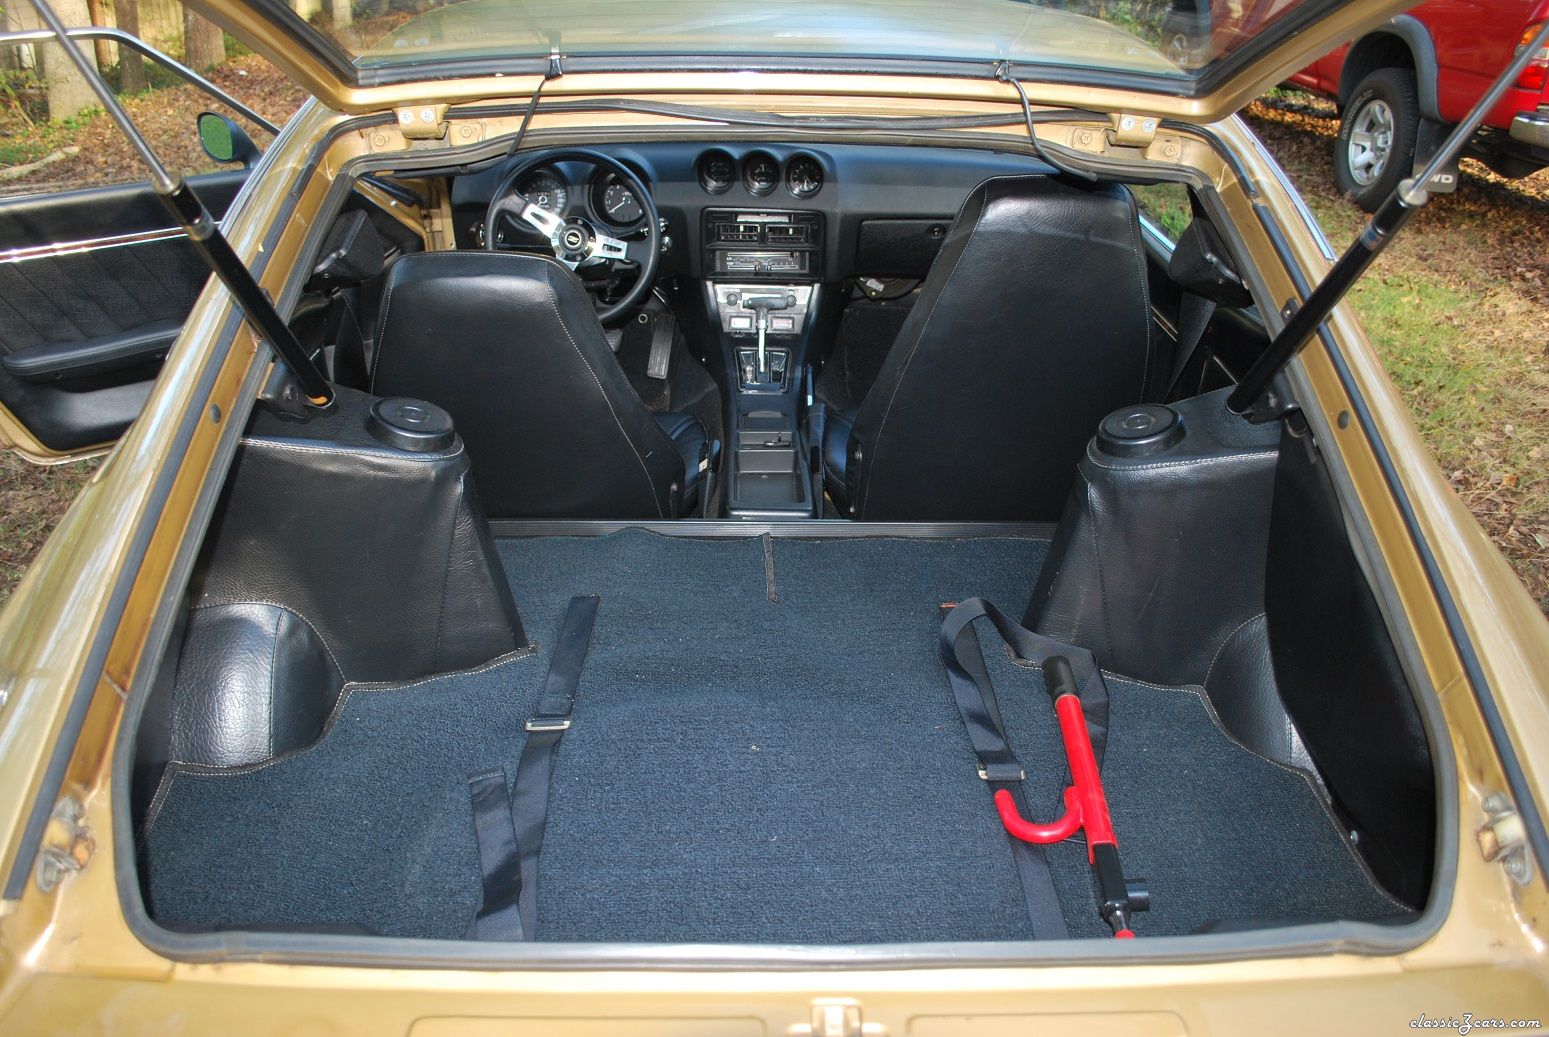 Rear interior hatch open